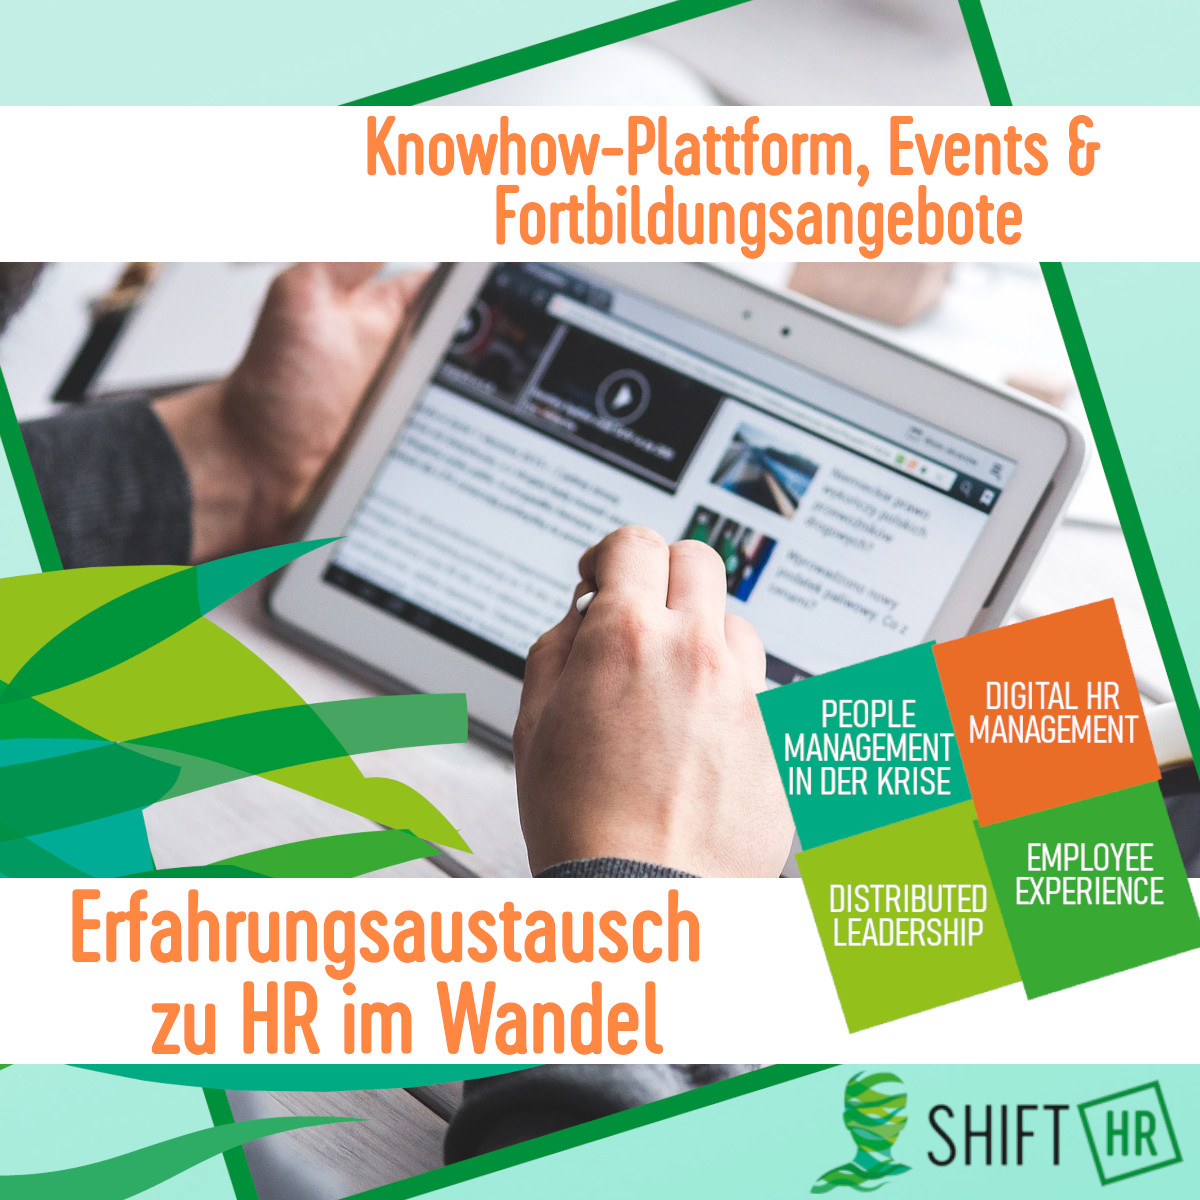 SHIFT/HR - Plattform zum Wandel in HR & Personalmanagement